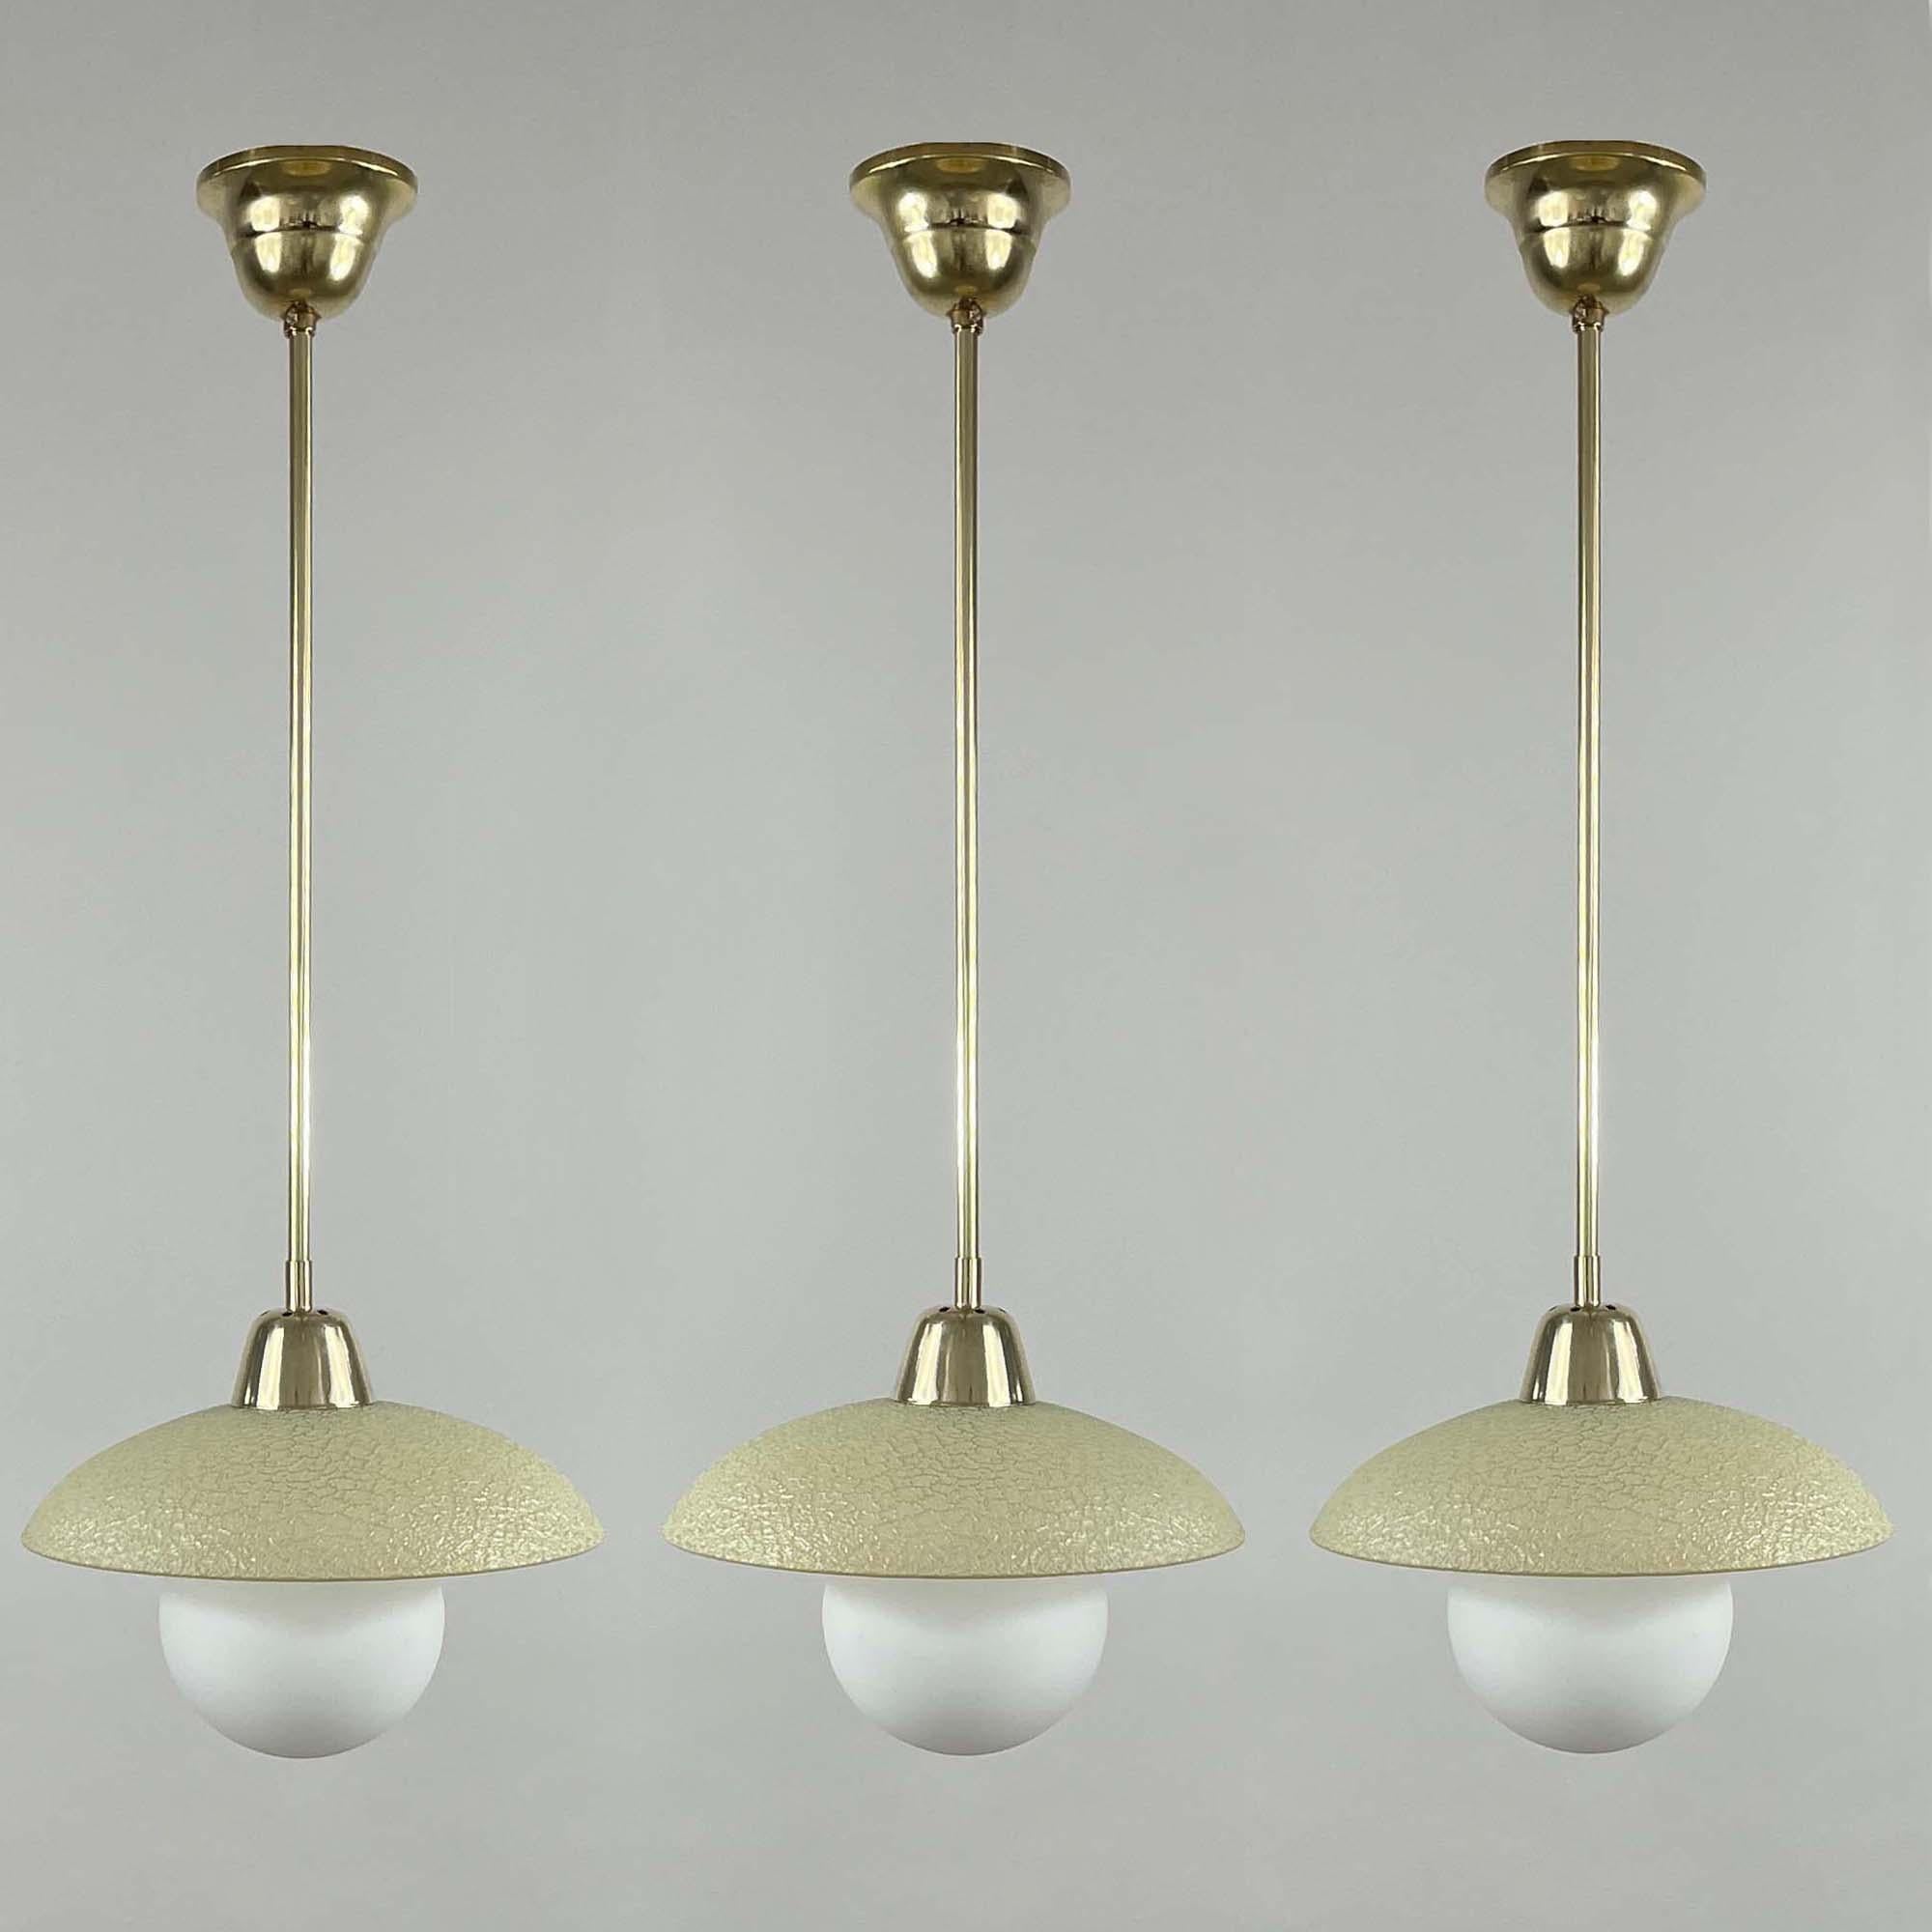 Diese elegante, minimalistische Pendelleuchte wurde in den 1940er bis 1950er Jahren in Schweden entworfen und hergestellt. 

Die Leuchte hat einen runden cremefarbenen Lampenschirm aus Craquelé-Glas und Messingbeschläge. Sie benötigt eine